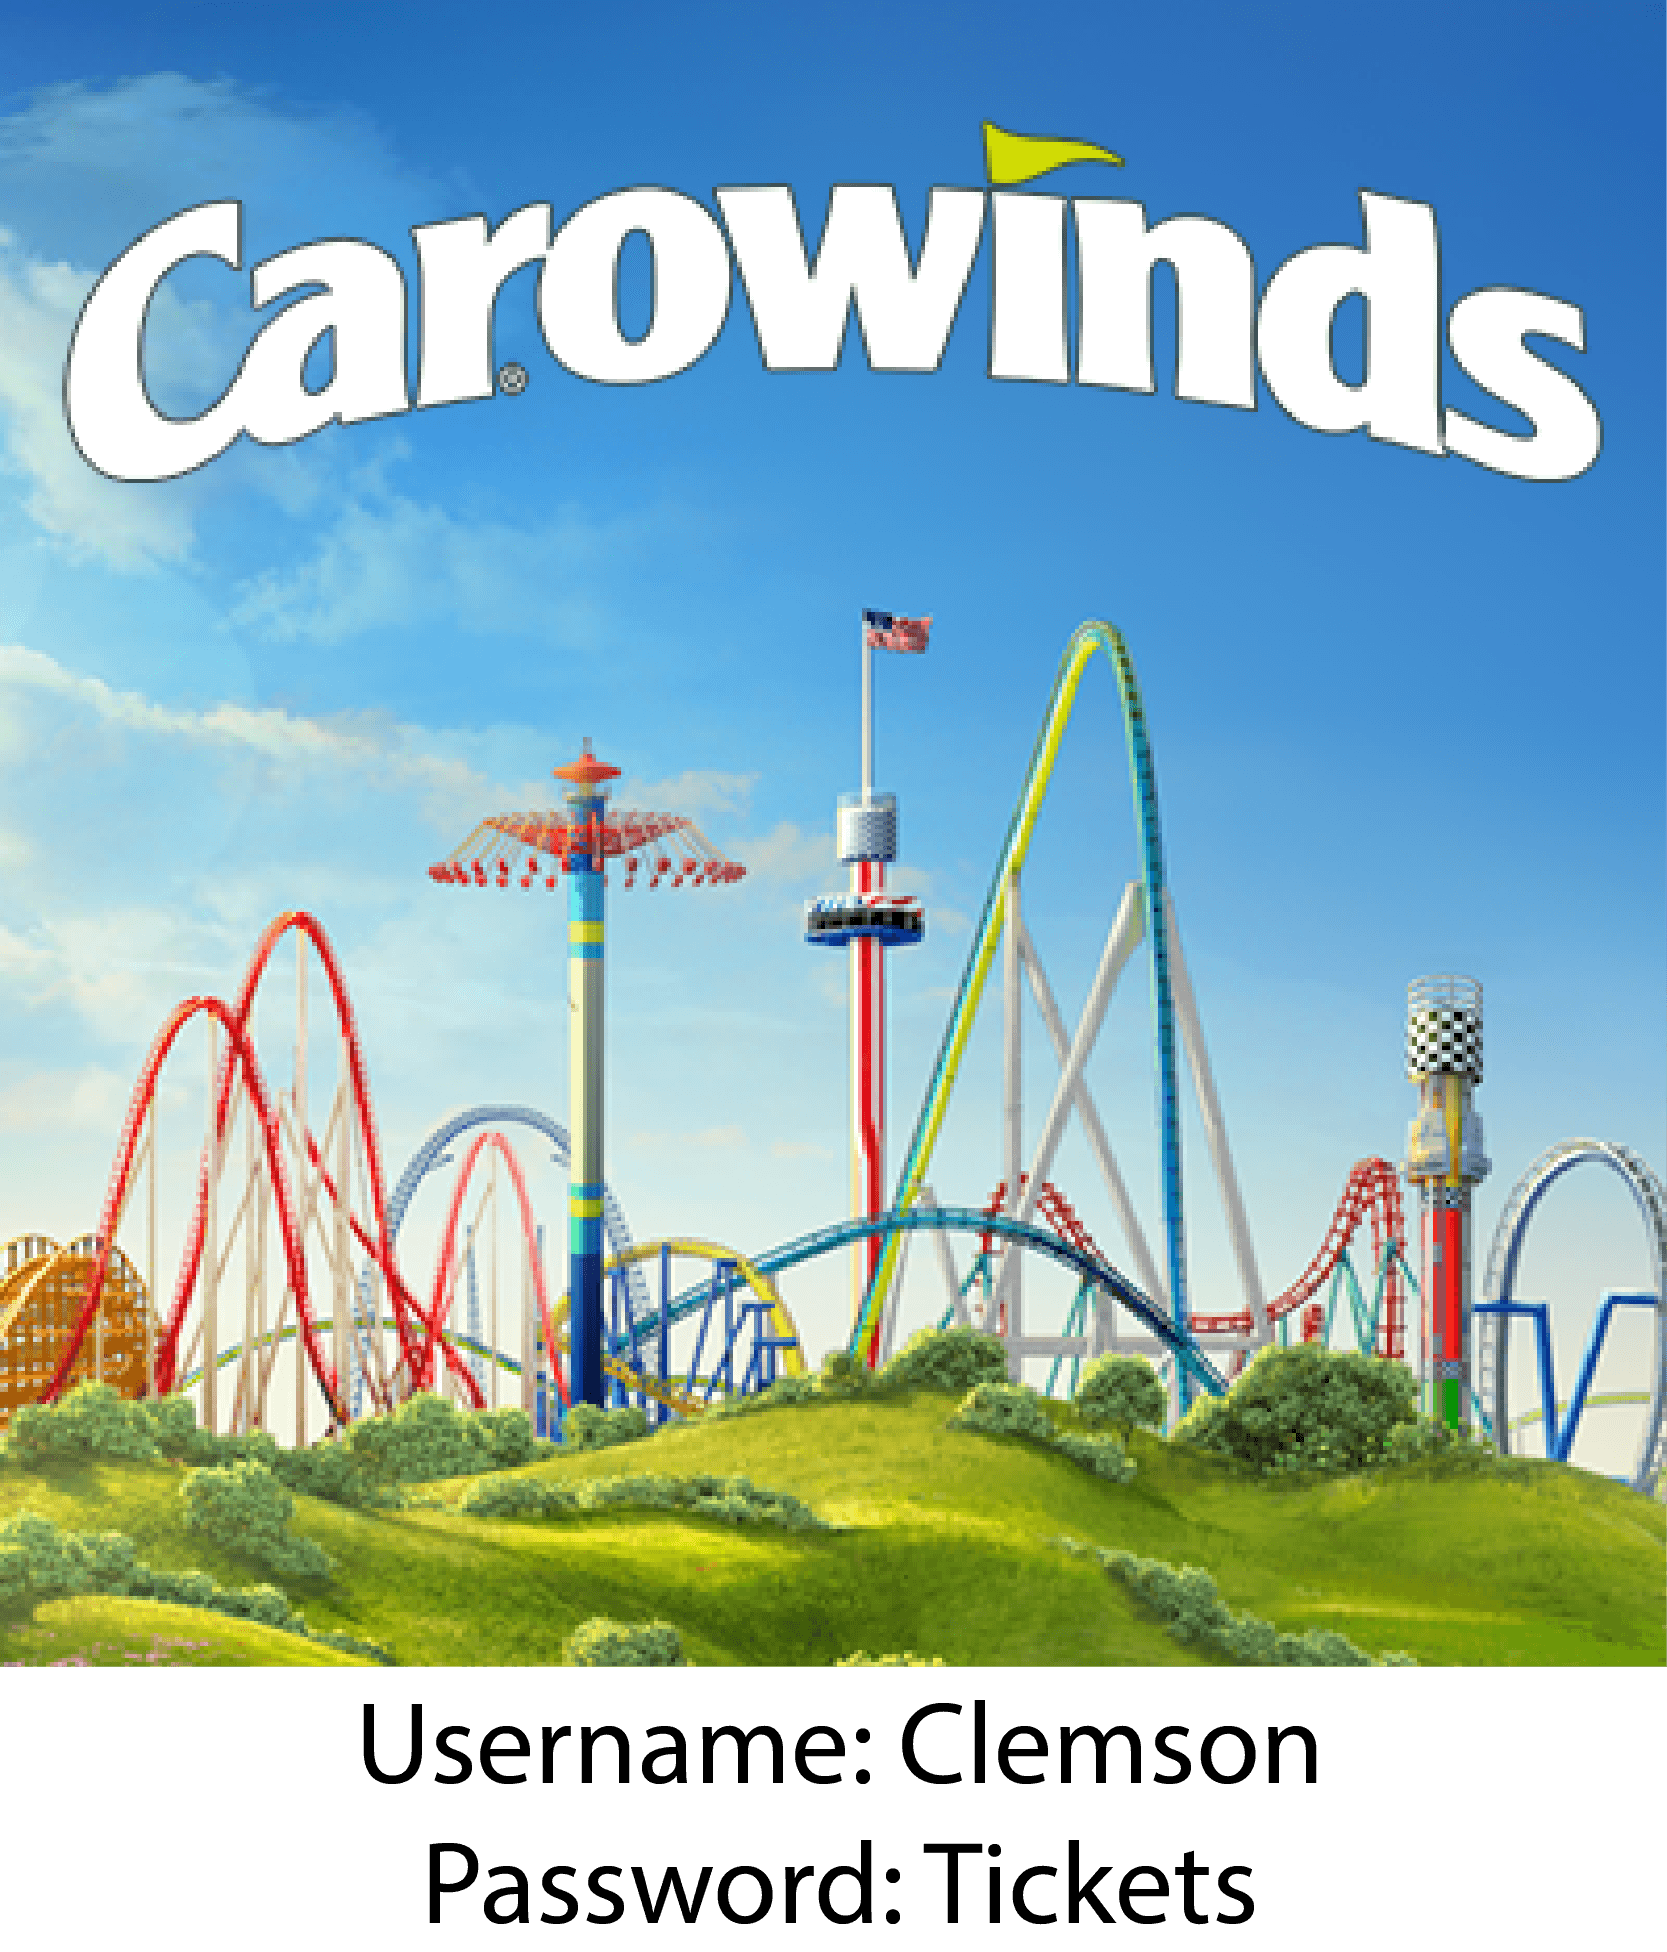 Carowinds Logo - Carowinds Logos